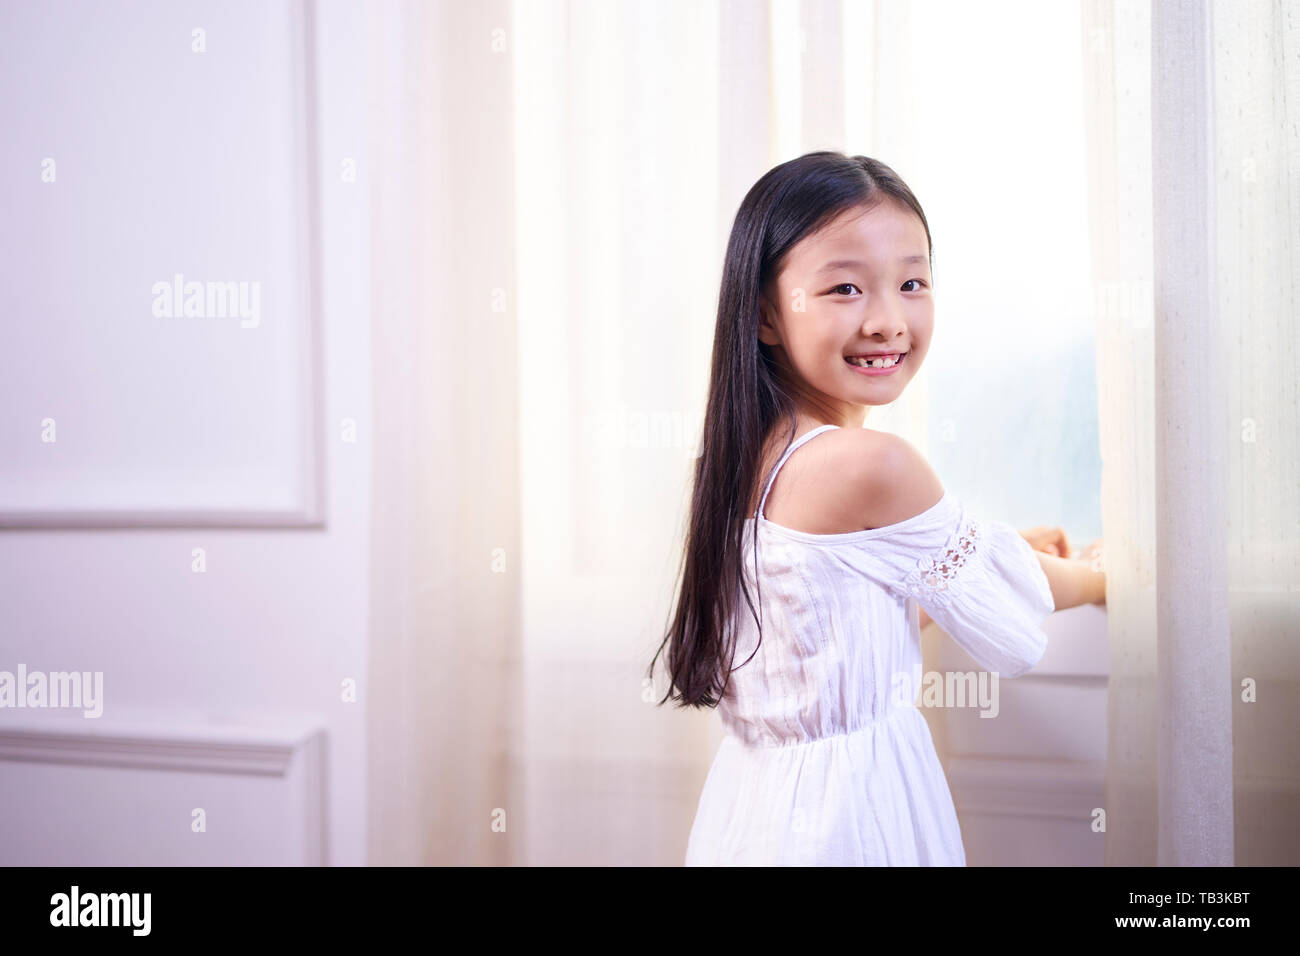 Belle petite fille asiatique avec de longs cheveux noirs debout devant windwo tournant à l'appareil photo smiling Banque D'Images